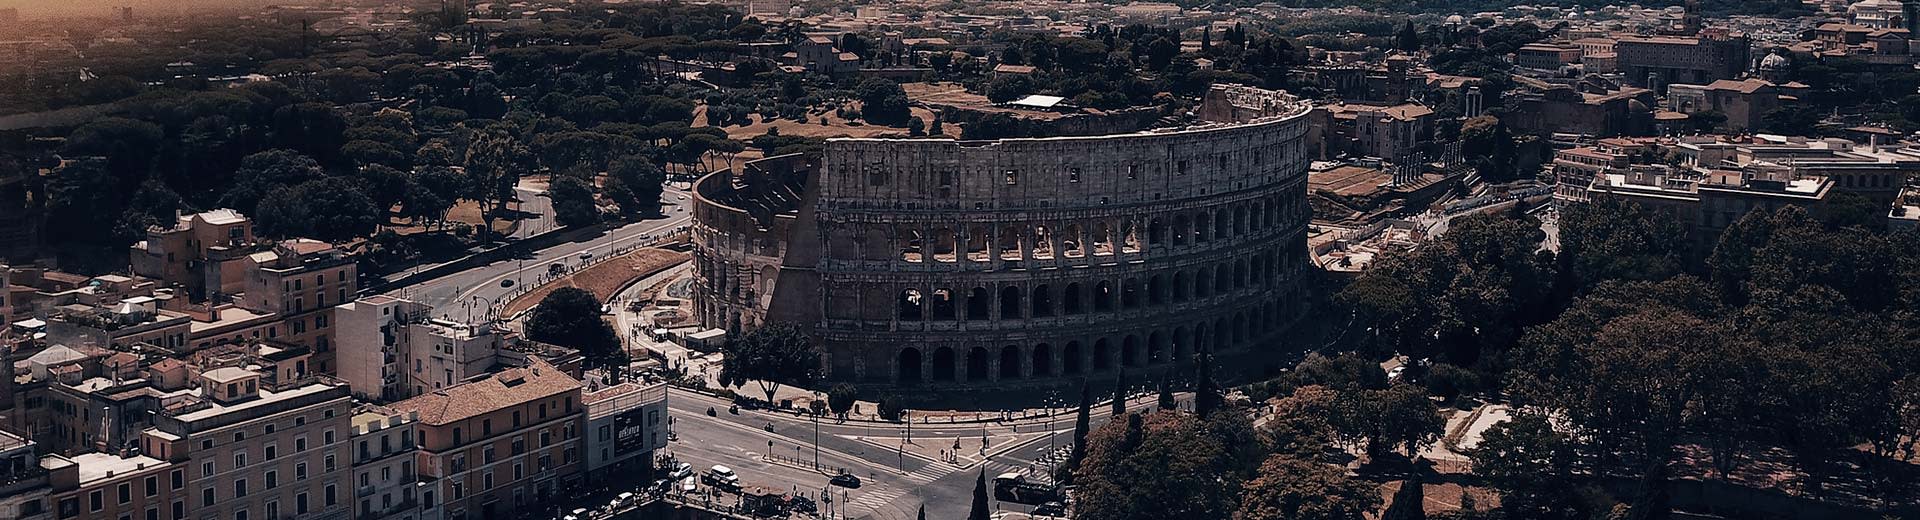 In der Halblicht von Dämmerung oder Morgendämmerung dominiert das berühmte Kolosseum Roms das Bild, umgeben von Gebäuden.